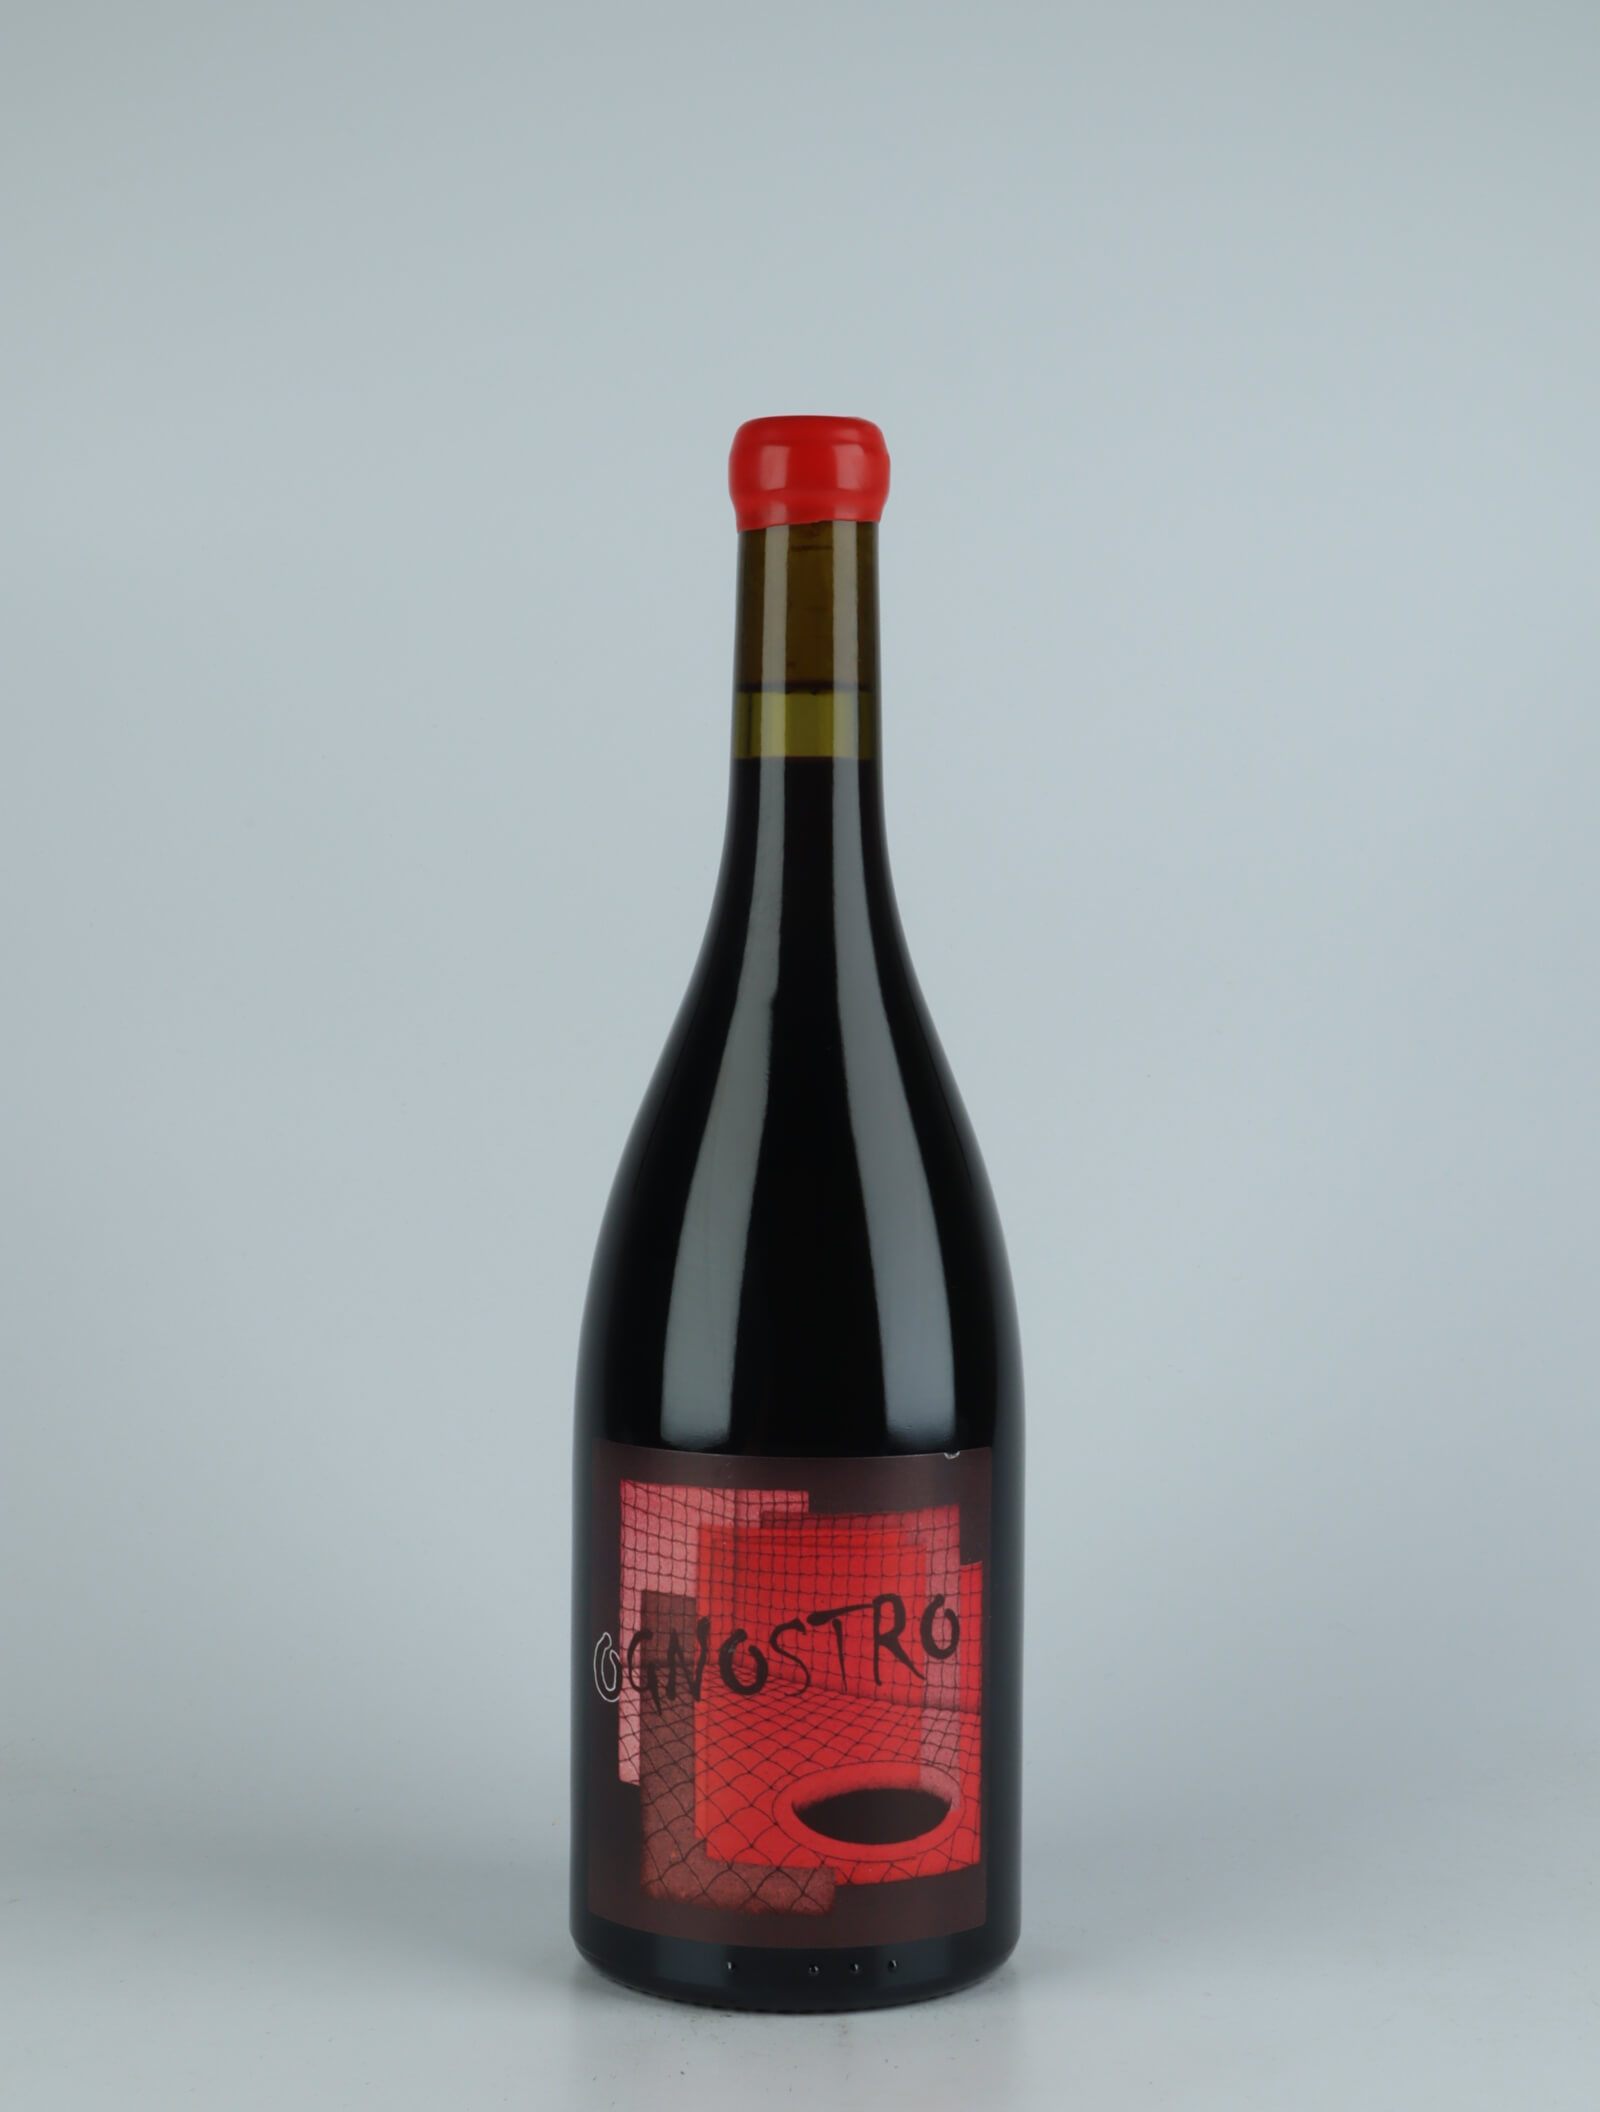 En flaske 2019 Ognostro Rosso Rødvin fra Marco Tinessa, Campanien i Italien